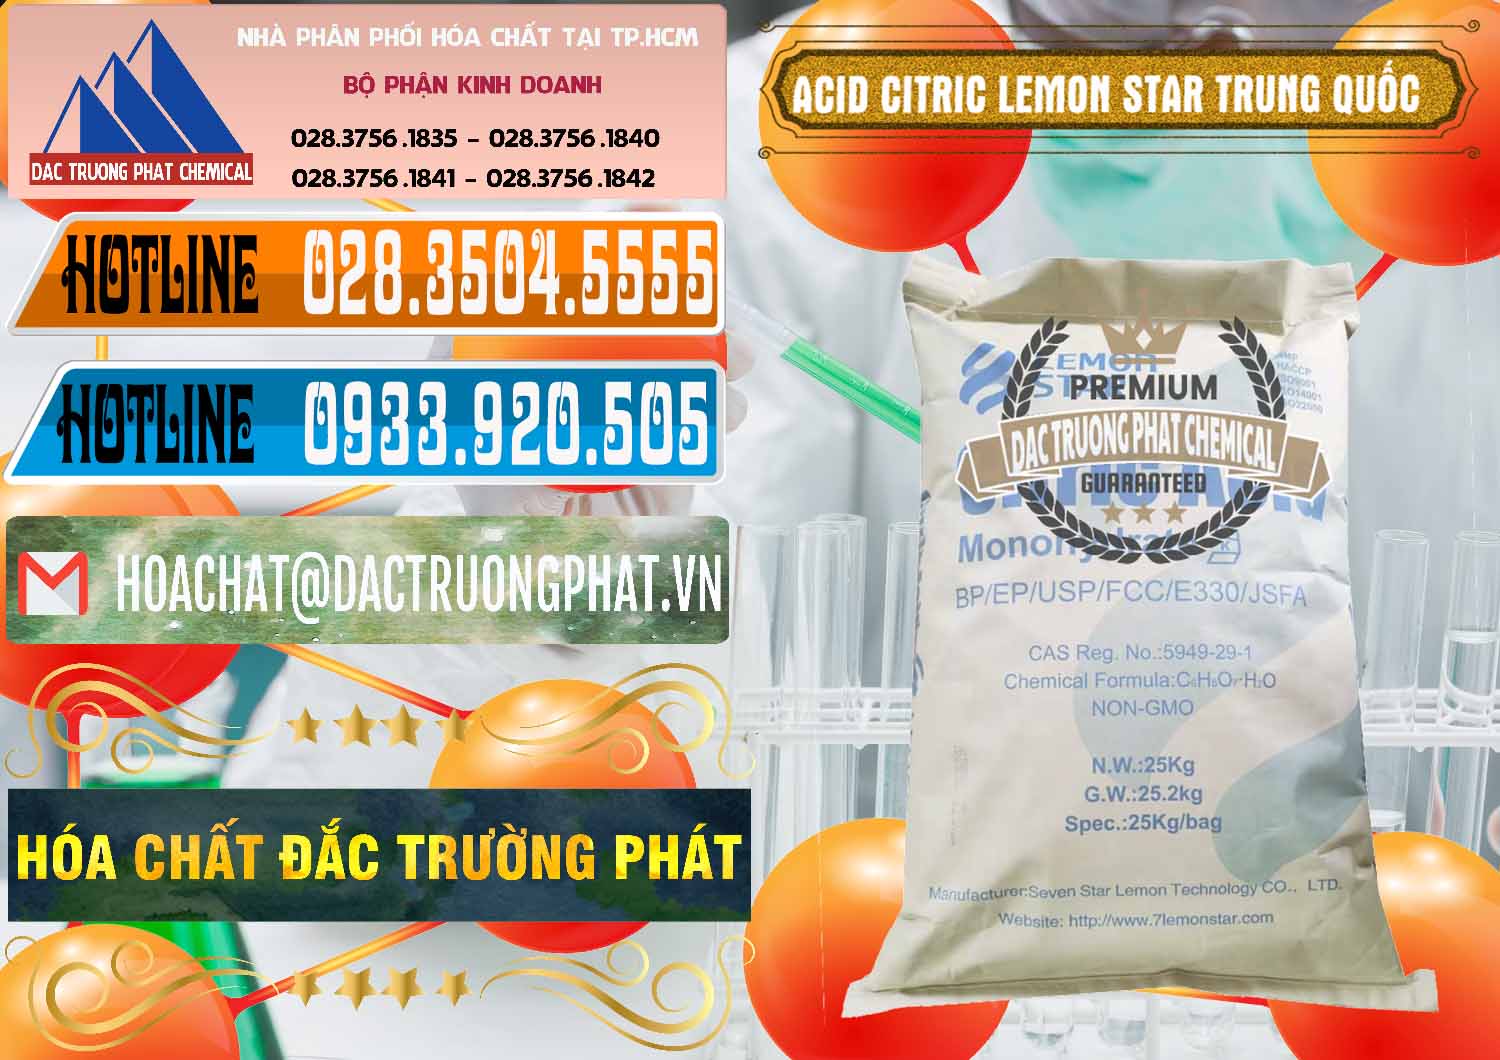 Bán & cung cấp Acid Citric - Axit Citric BP/EP/USP/FCC/E330 Lemon Star Trung Quốc China - 0286 - Cty chuyên phân phối & nhập khẩu hóa chất tại TP.HCM - stmp.net